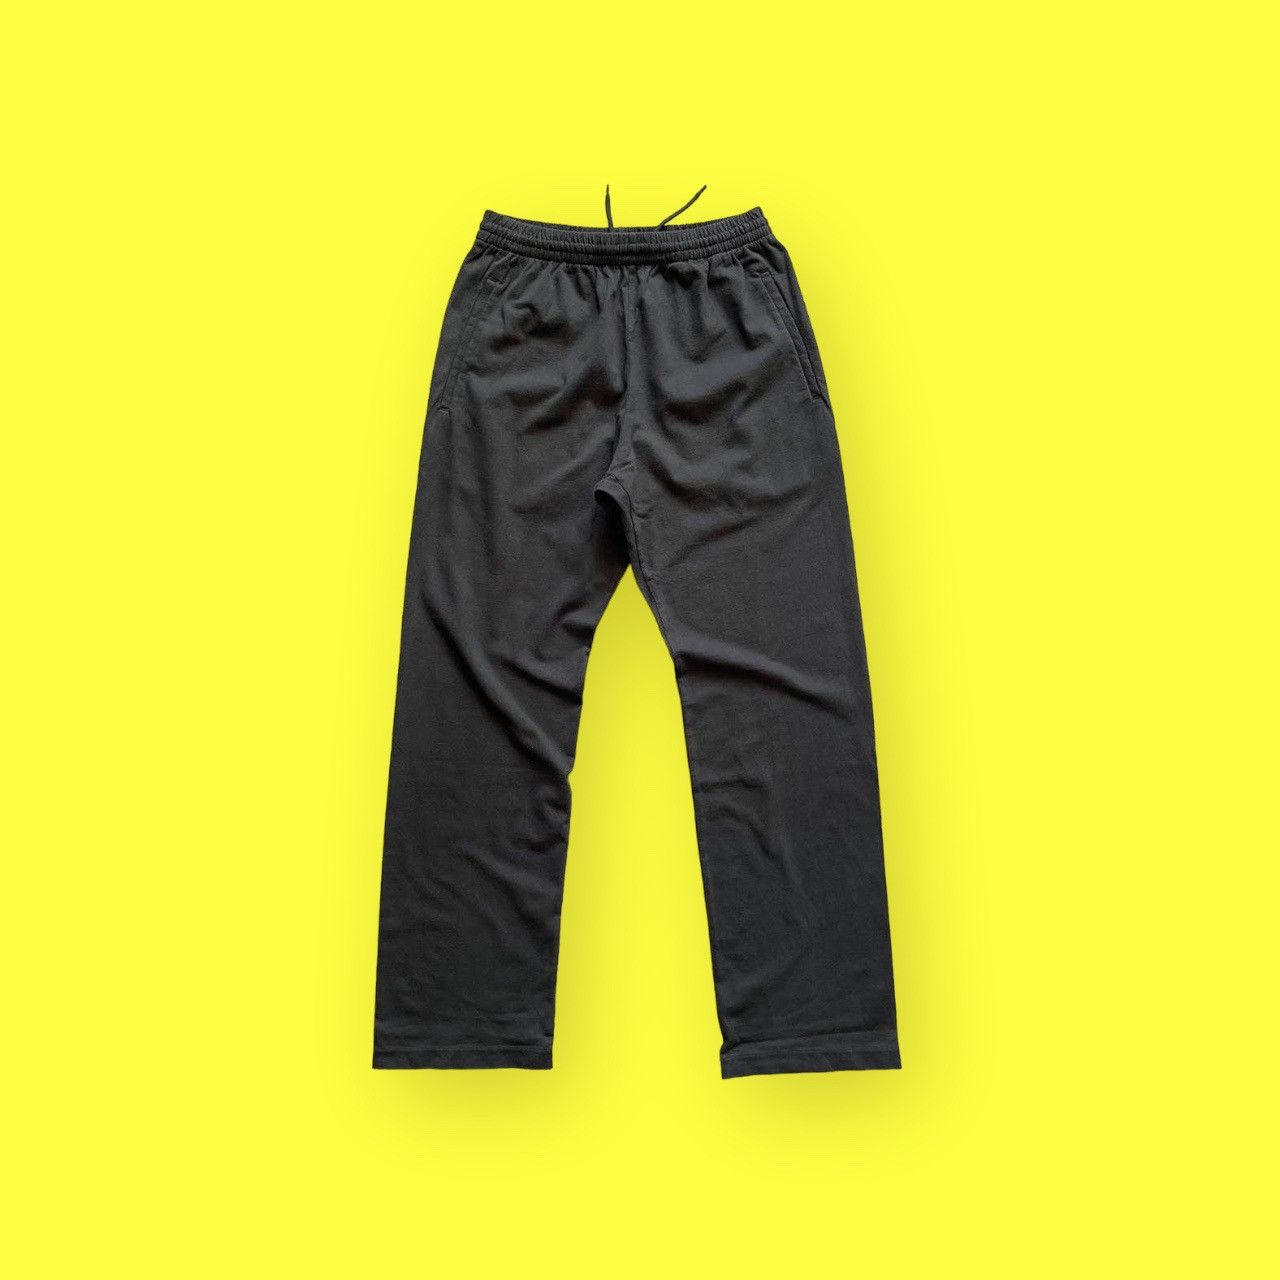 Balenciaga Yeezy Gap Unreleased Pants Size XS | Grailed